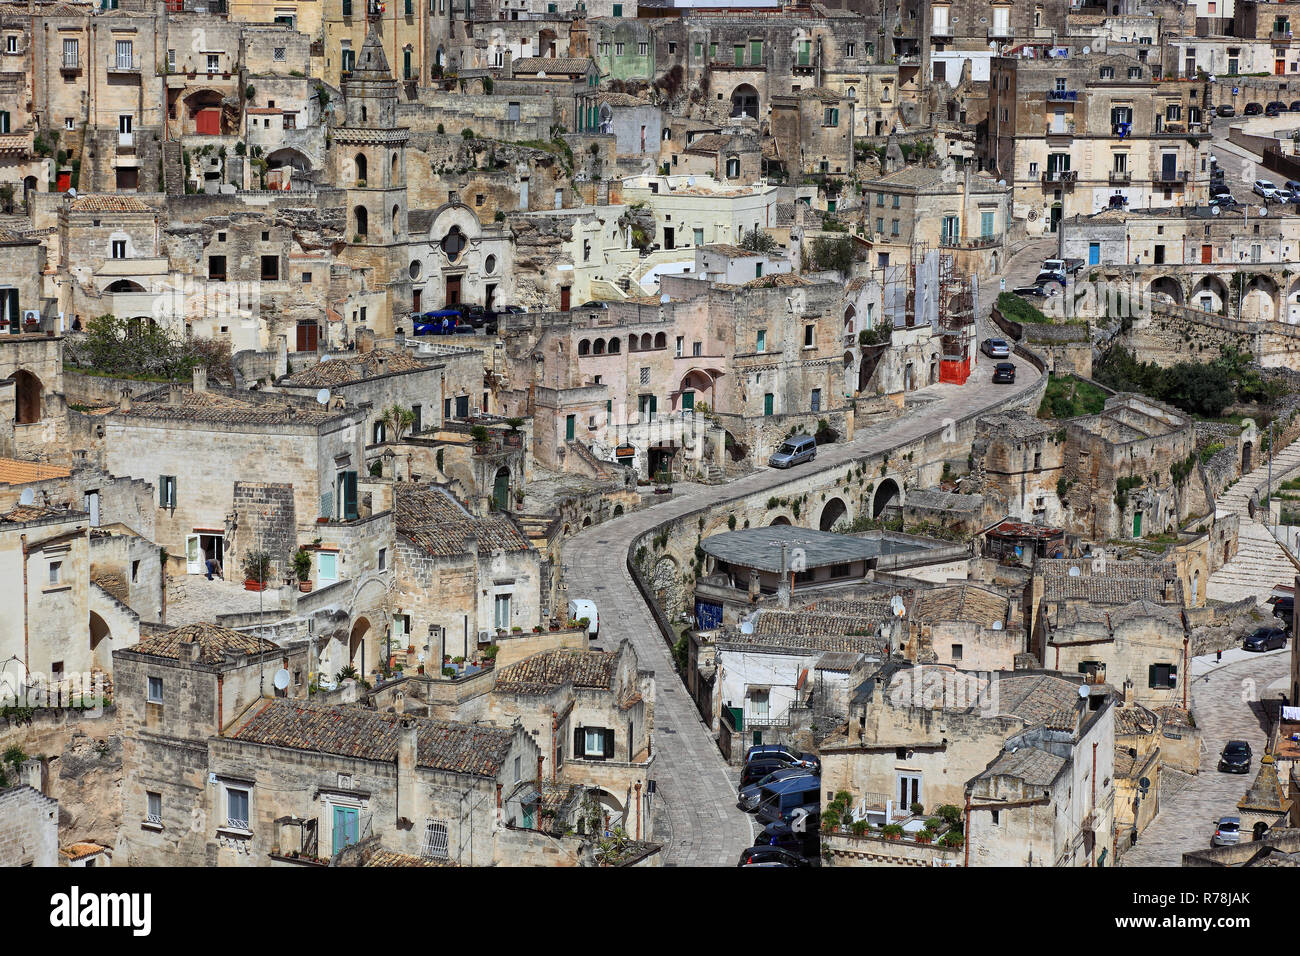 Centro storico, Sassi di Matera insediamenti rupestri, Sito Patrimonio Mondiale dell'Unesco, Matera, Basilicata, Italia Foto Stock